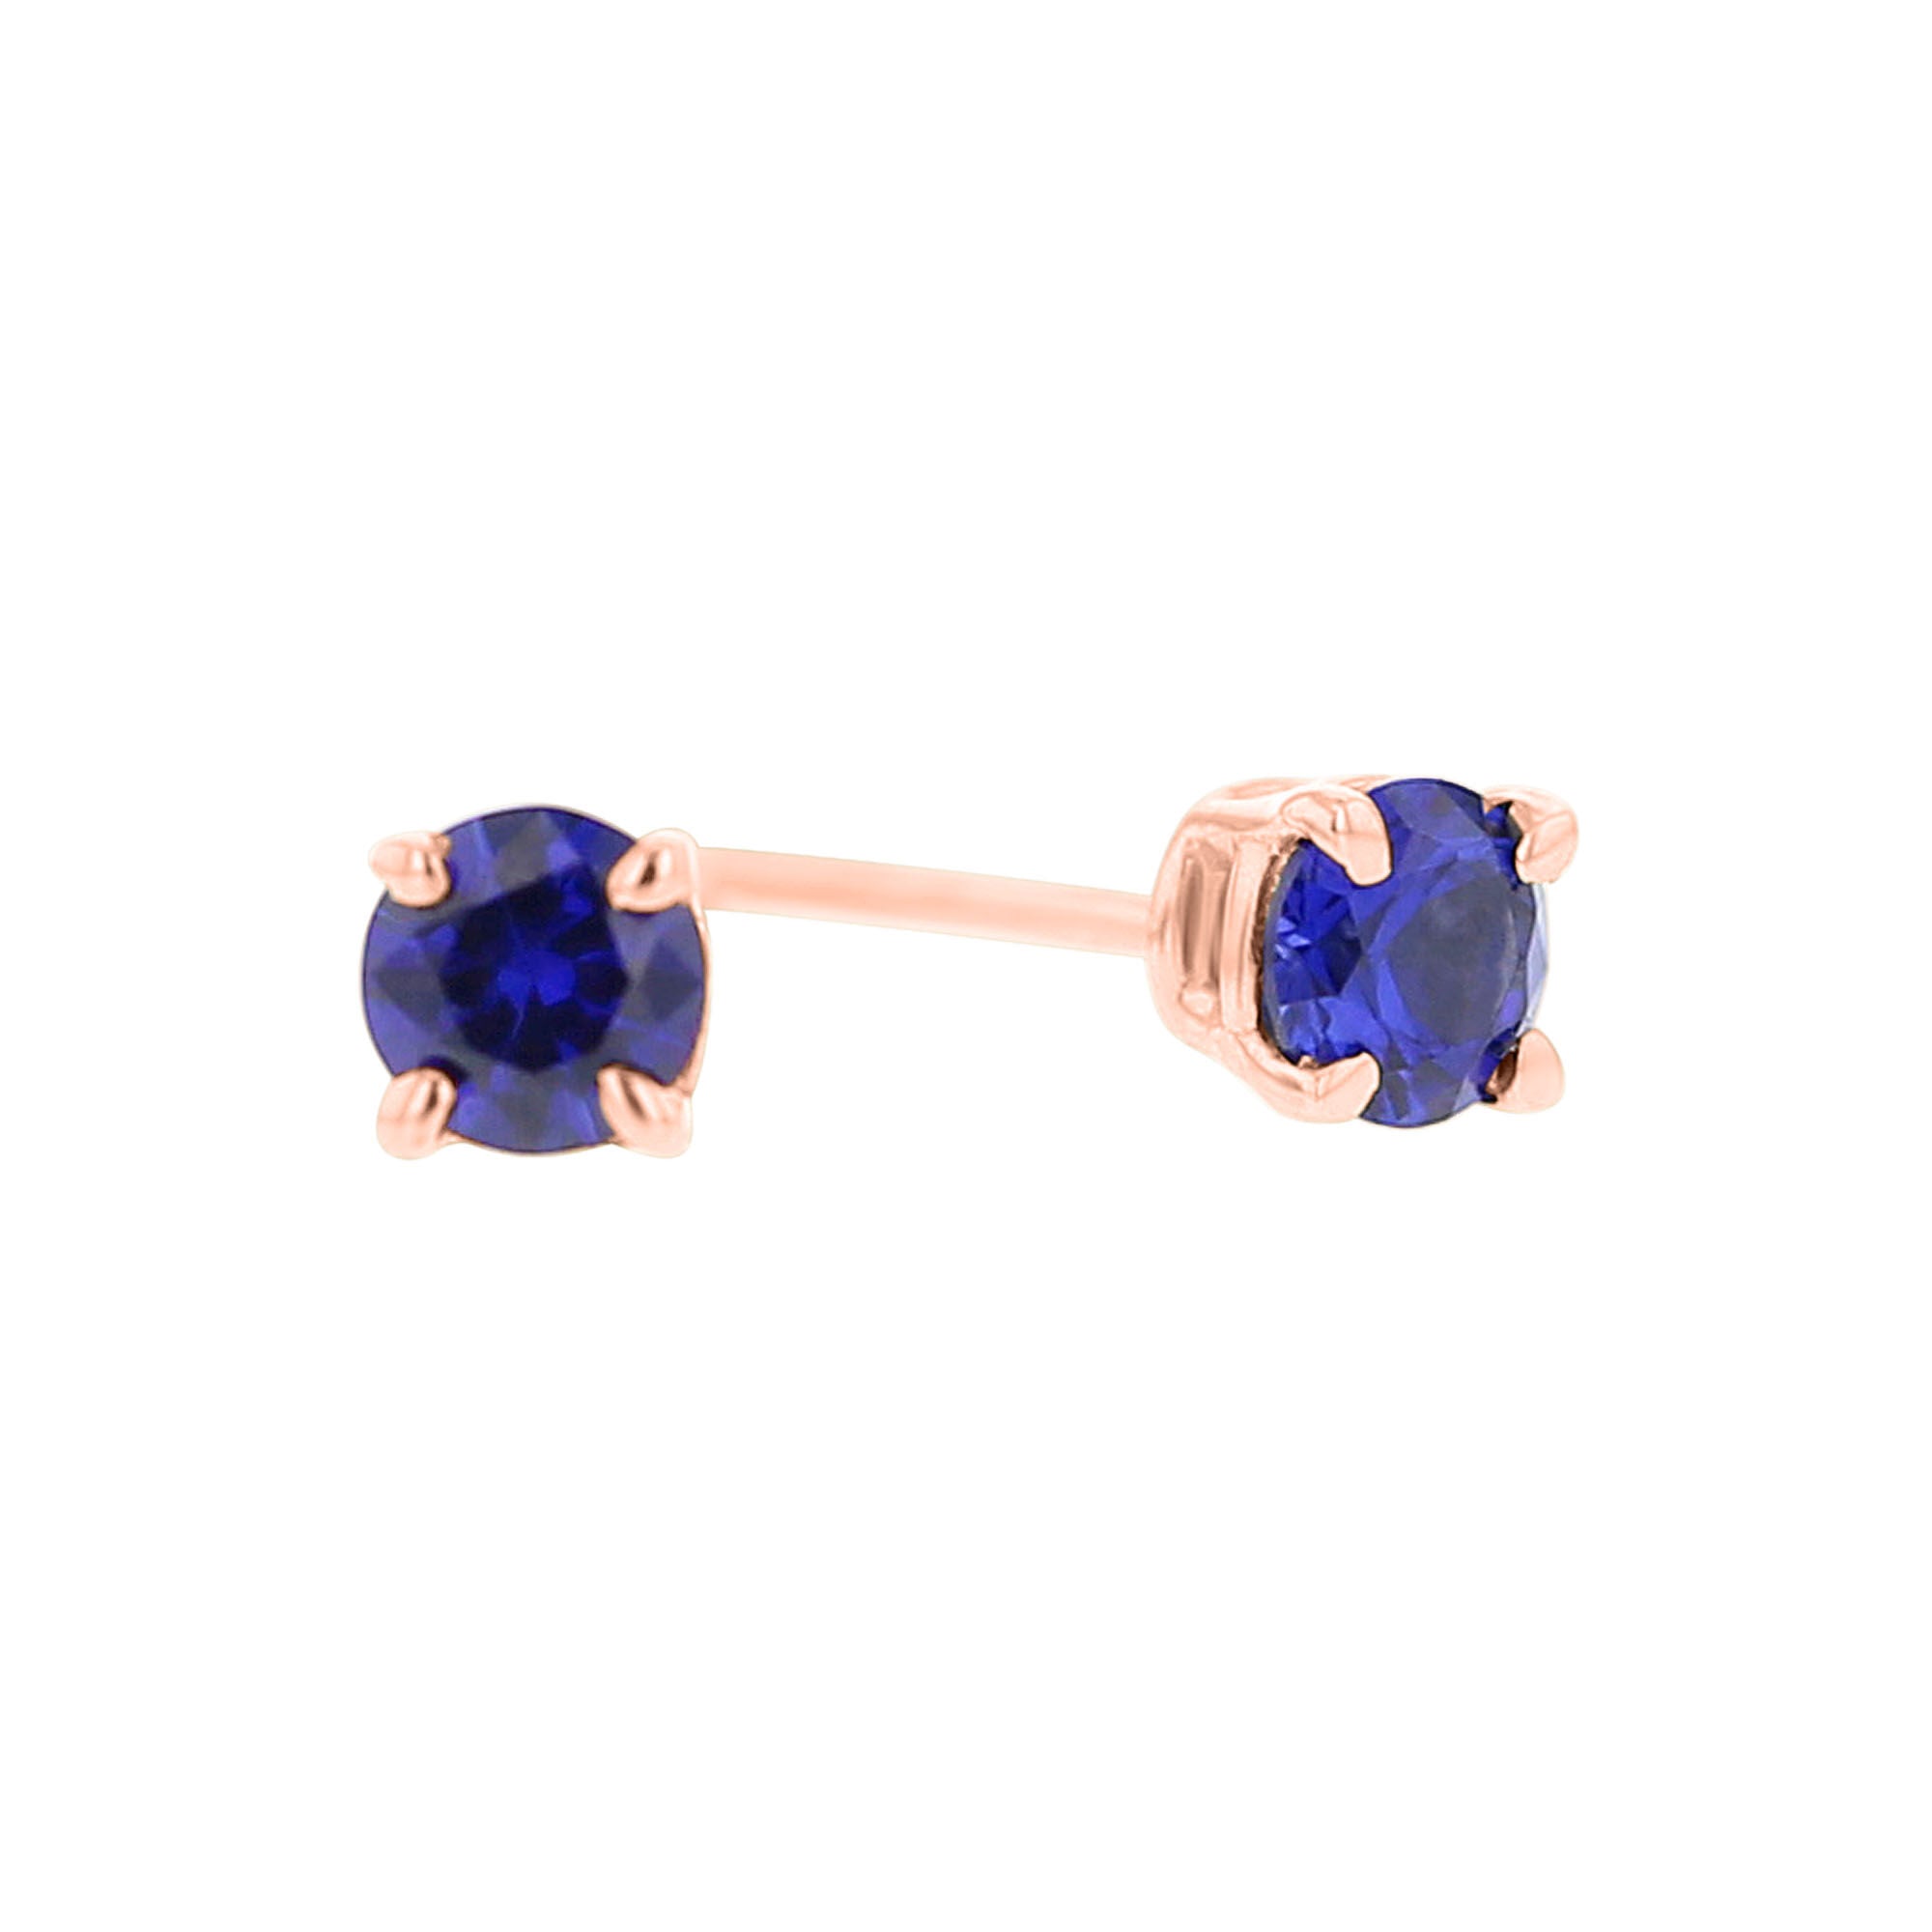 Majestic Blue Sapphire Stud Earrings 1/3ct